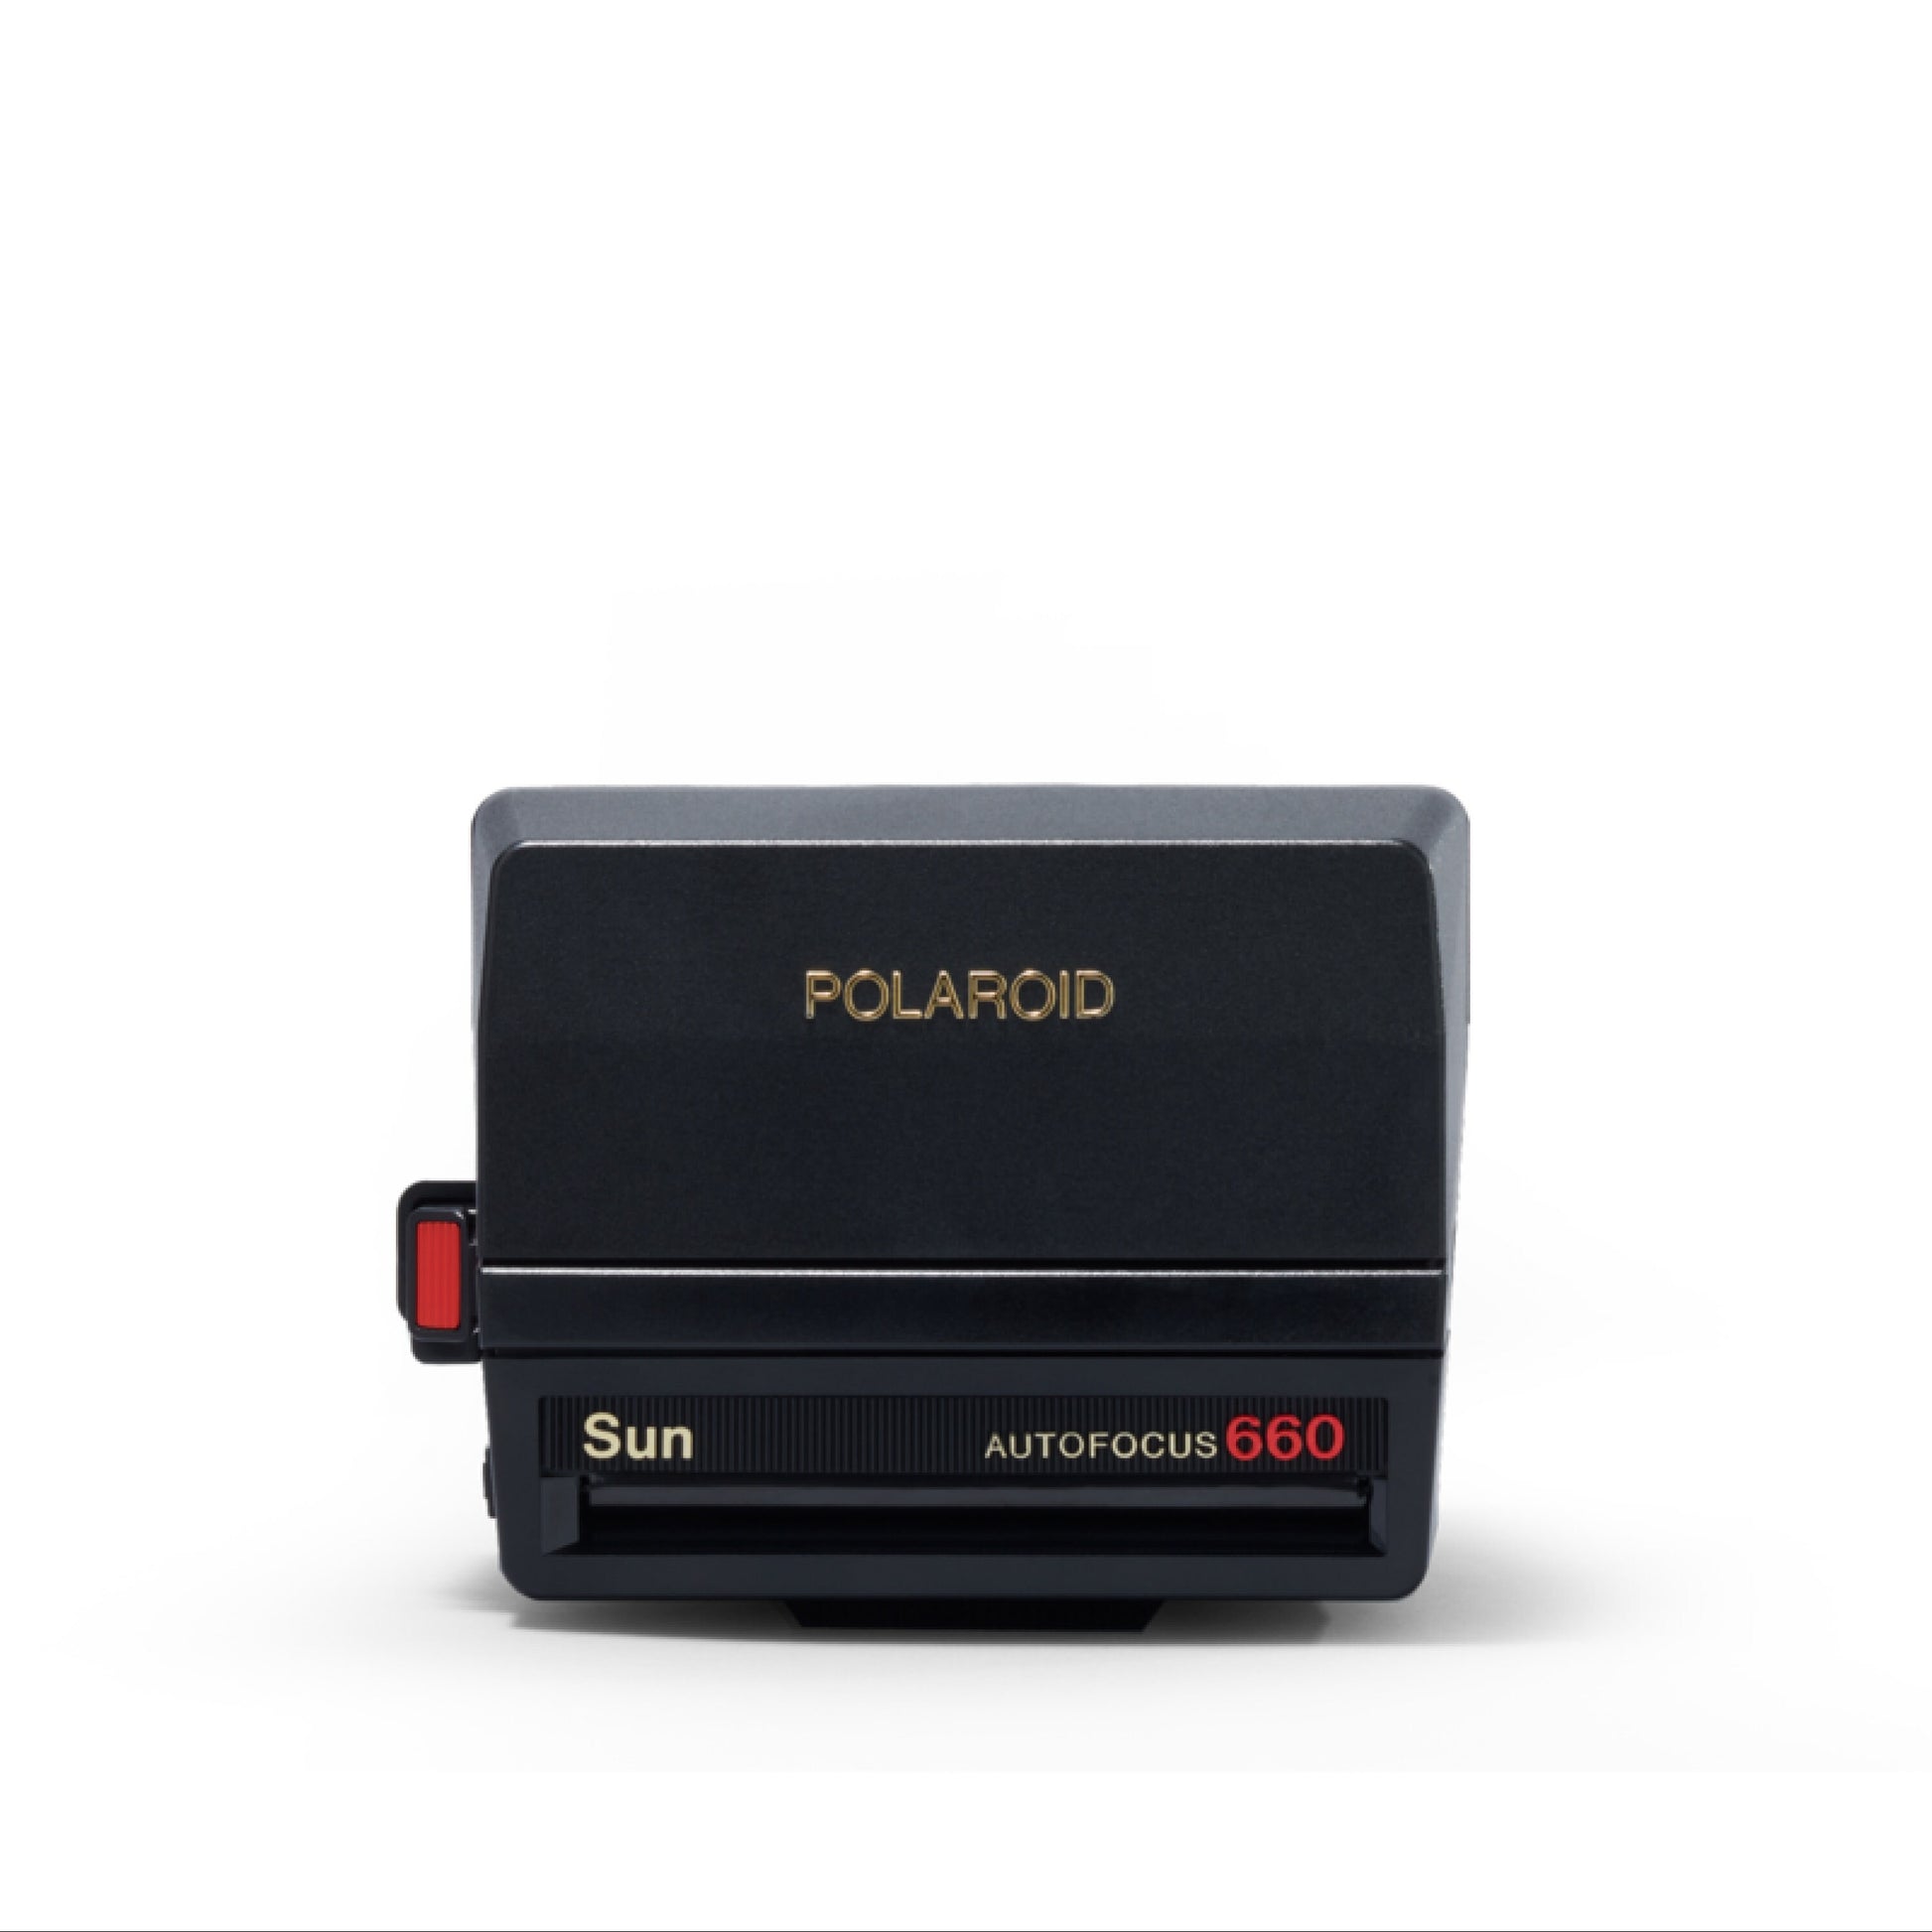 GIFT SET! Polaroid Sun Autofocus 660 Instant Camera + Film Triple Pack - Vintage Polaroid Instant Cameras